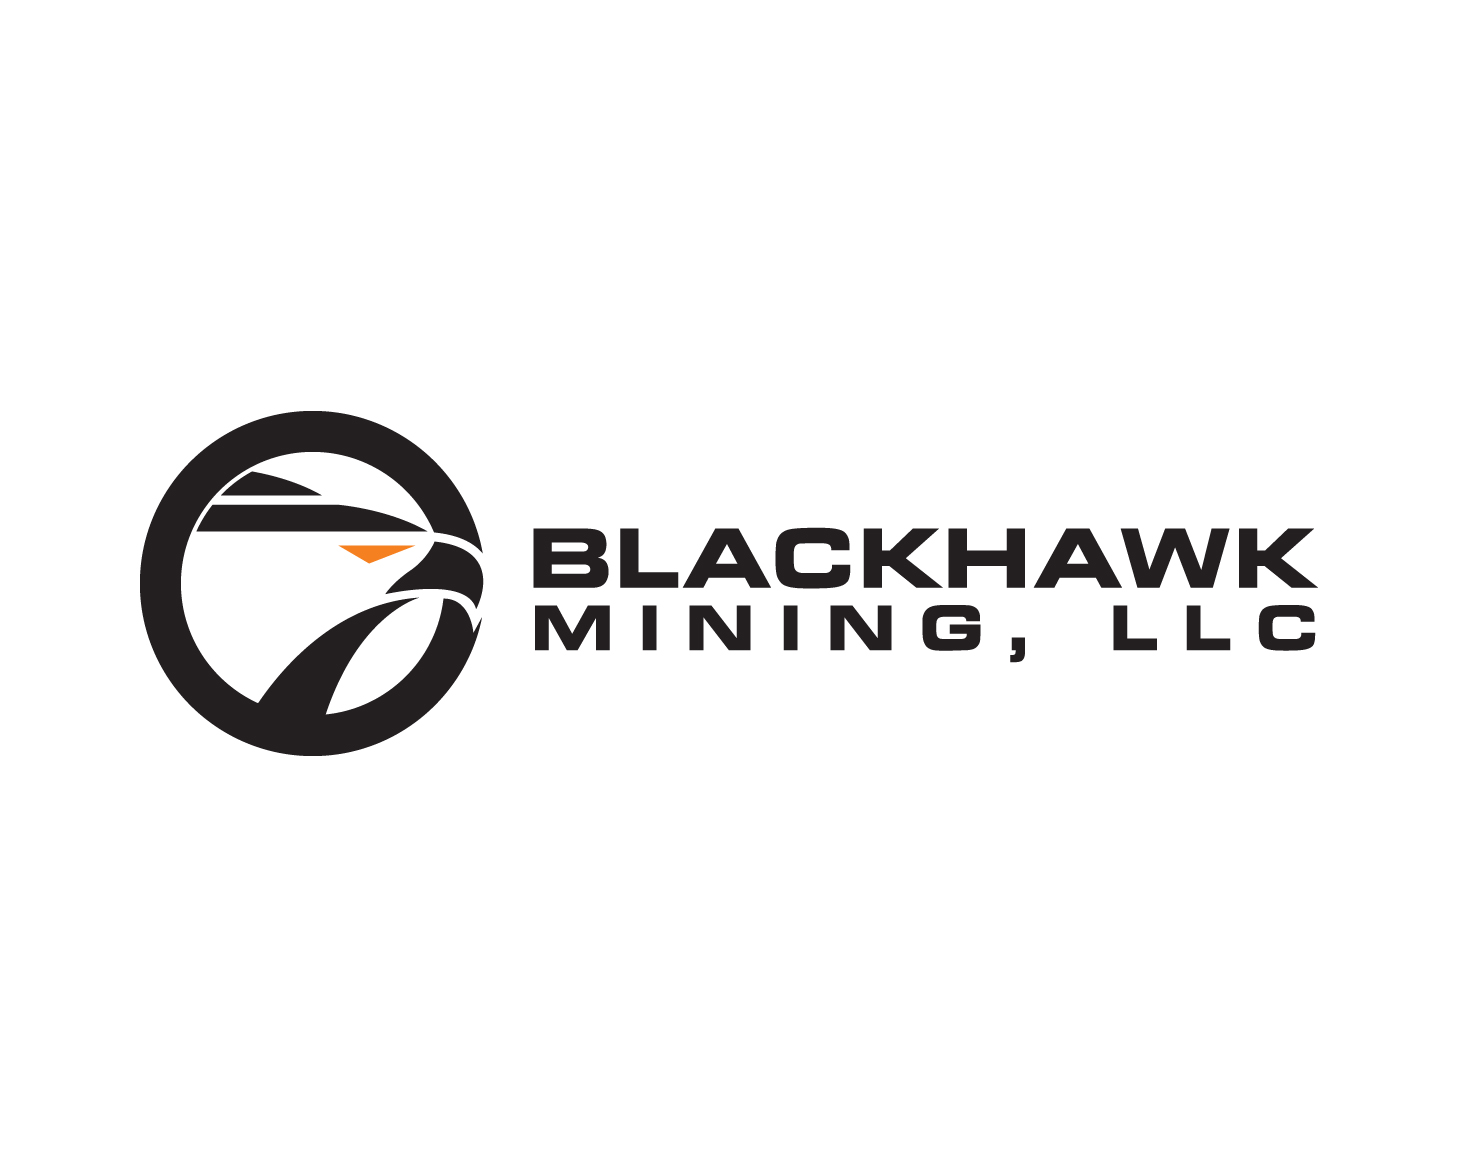 Blackhawk Mining